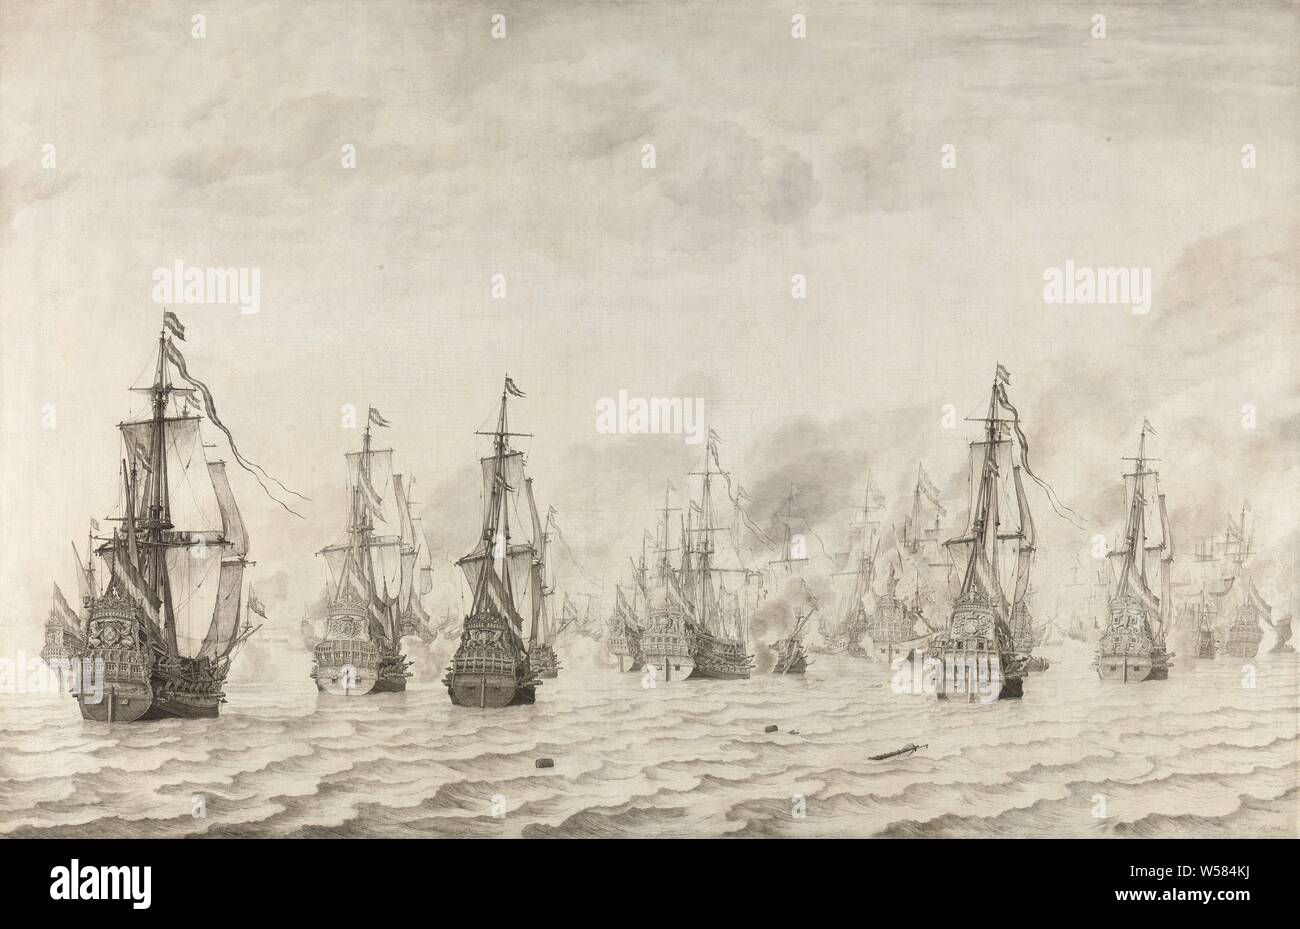 La bataille de Dunkerque La bataille navale contre les Espagnols près de Dunkerque, le 18 février 1639, la bataille navale contre les Espagnols à Dunkerque, le 18 février 1639. Une flotte de navires de guerre hollandais, vu sur le miroir, bataille (voile -les navires), Dunkerque, Cornelis Tromp, Willem van de Velde (J), 1659, toile, encre, h 123 cm × w 185 cm Banque D'Images